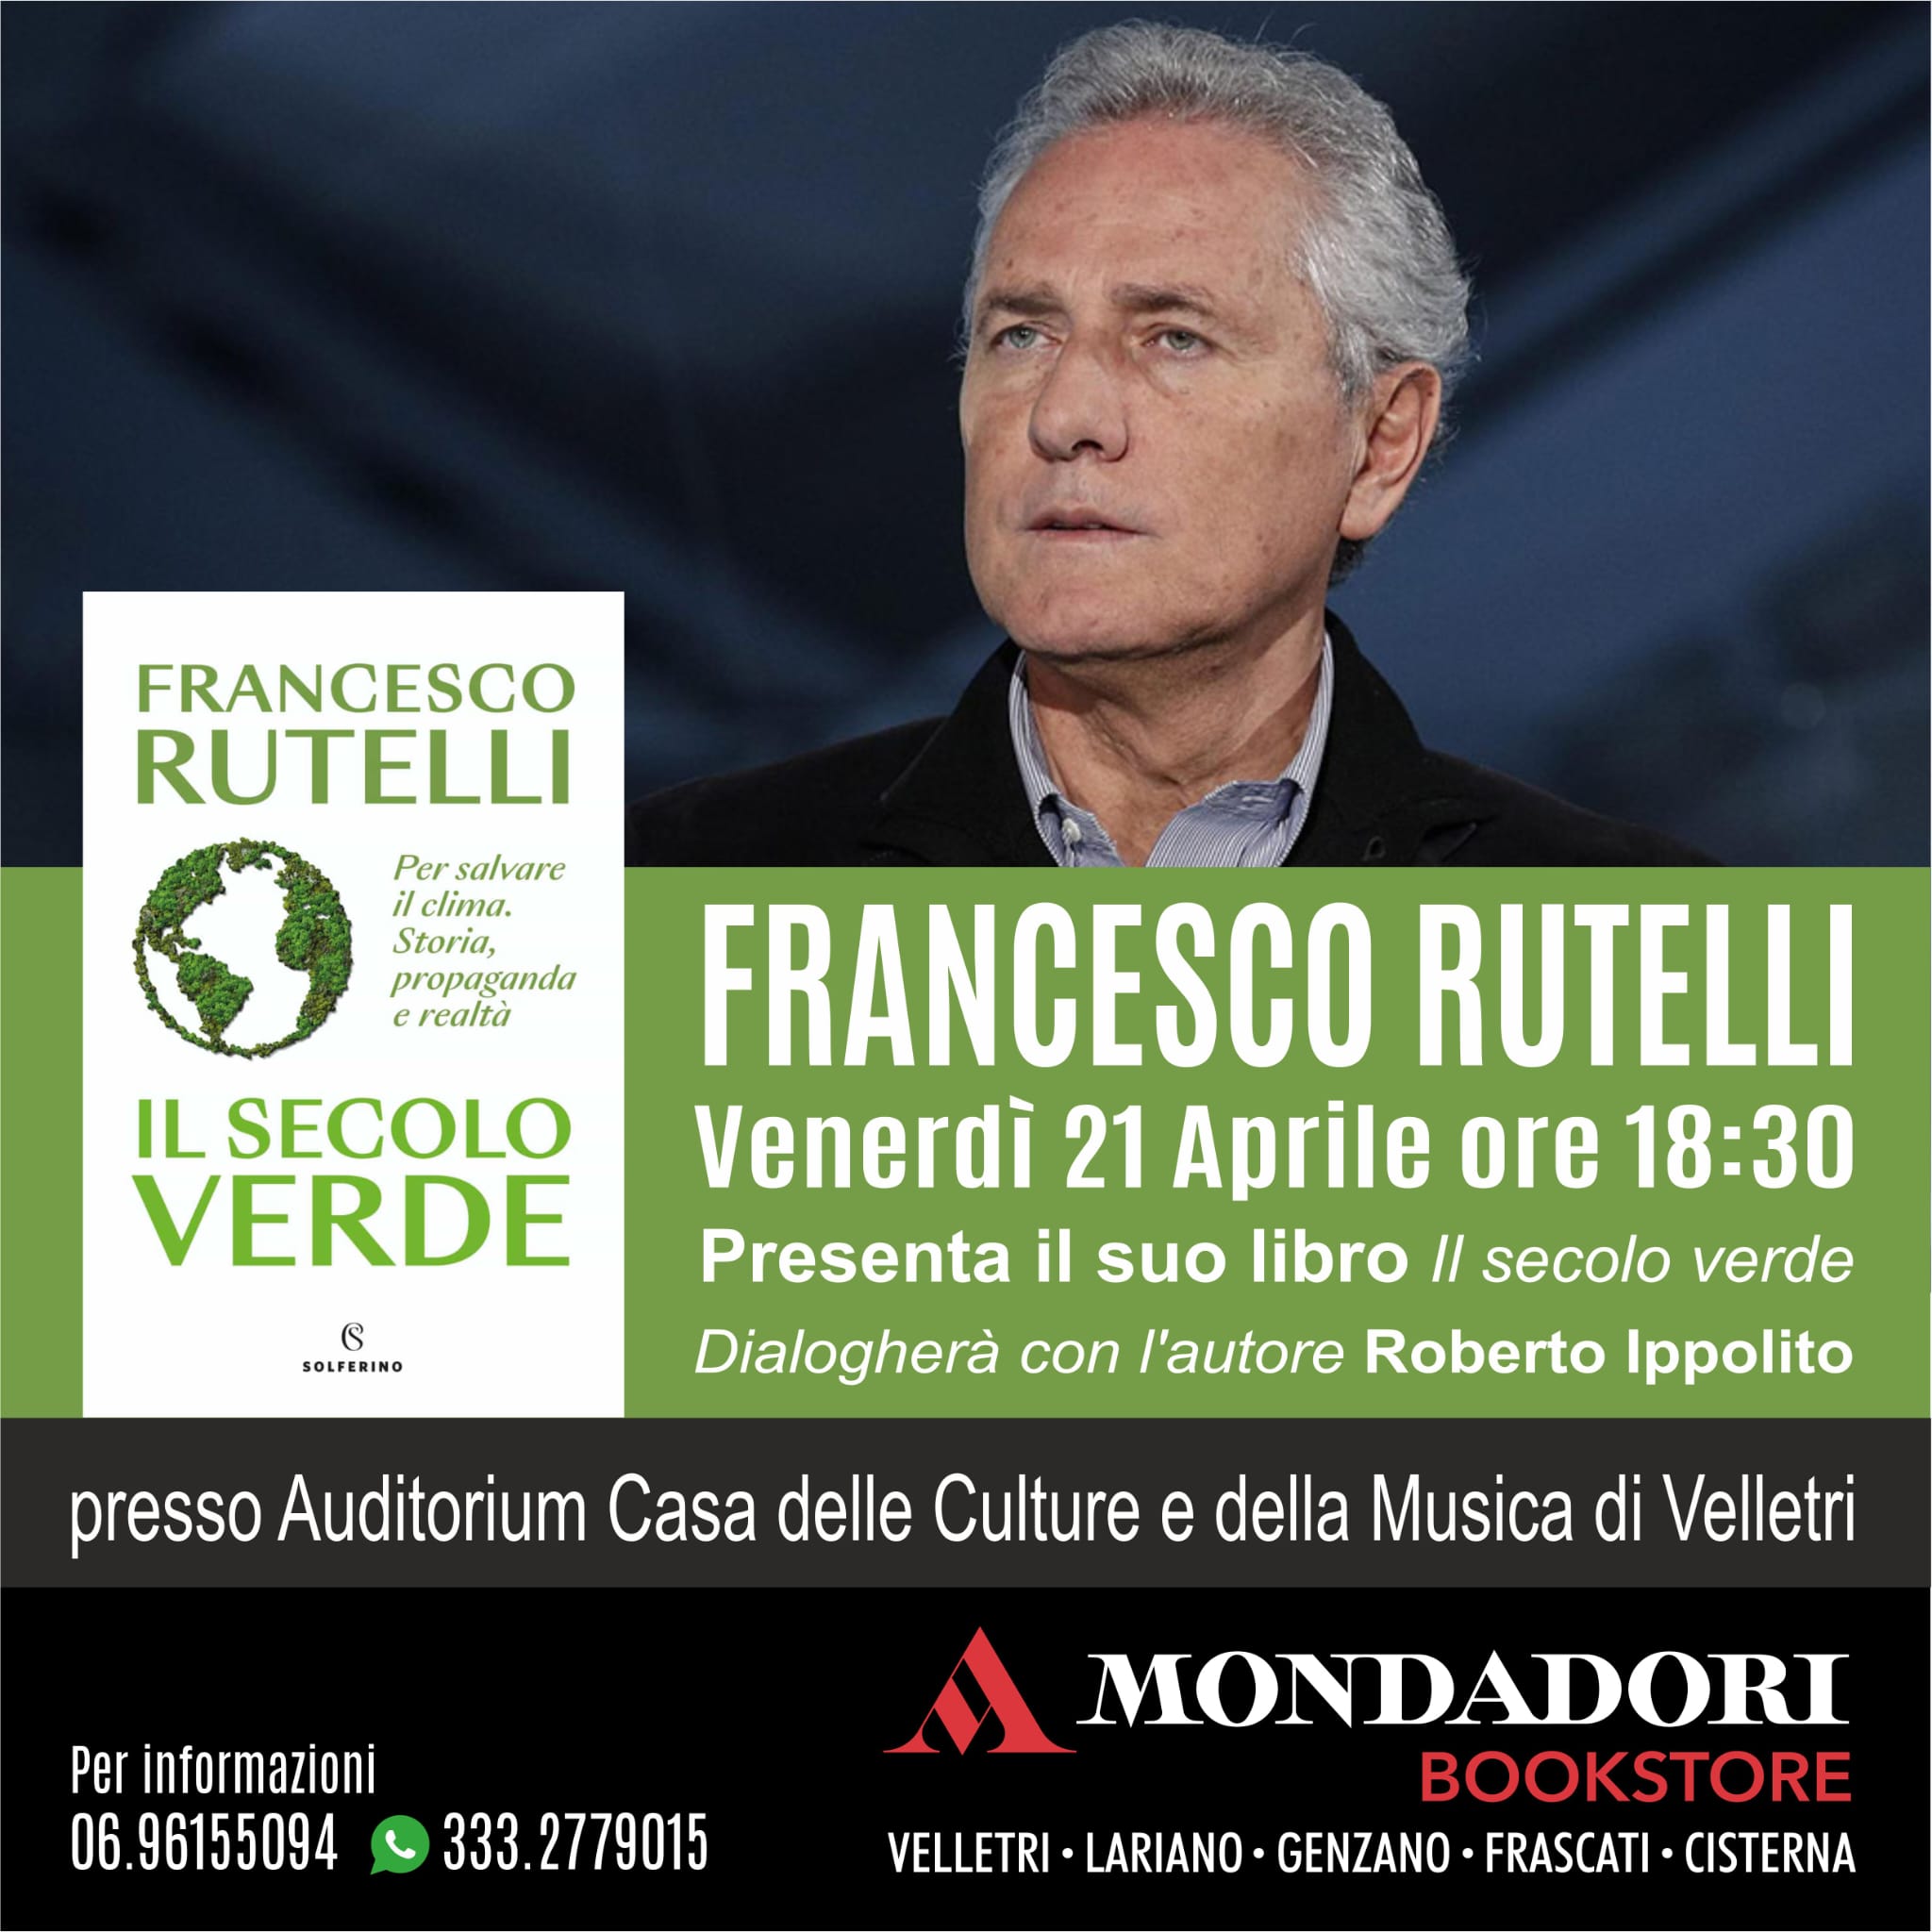 Francesco Rutelli autore del libro “Il secolo verde” (Solferino) presentato da Roberto Ippolito a Velletri venerdì 21 aprile 2023